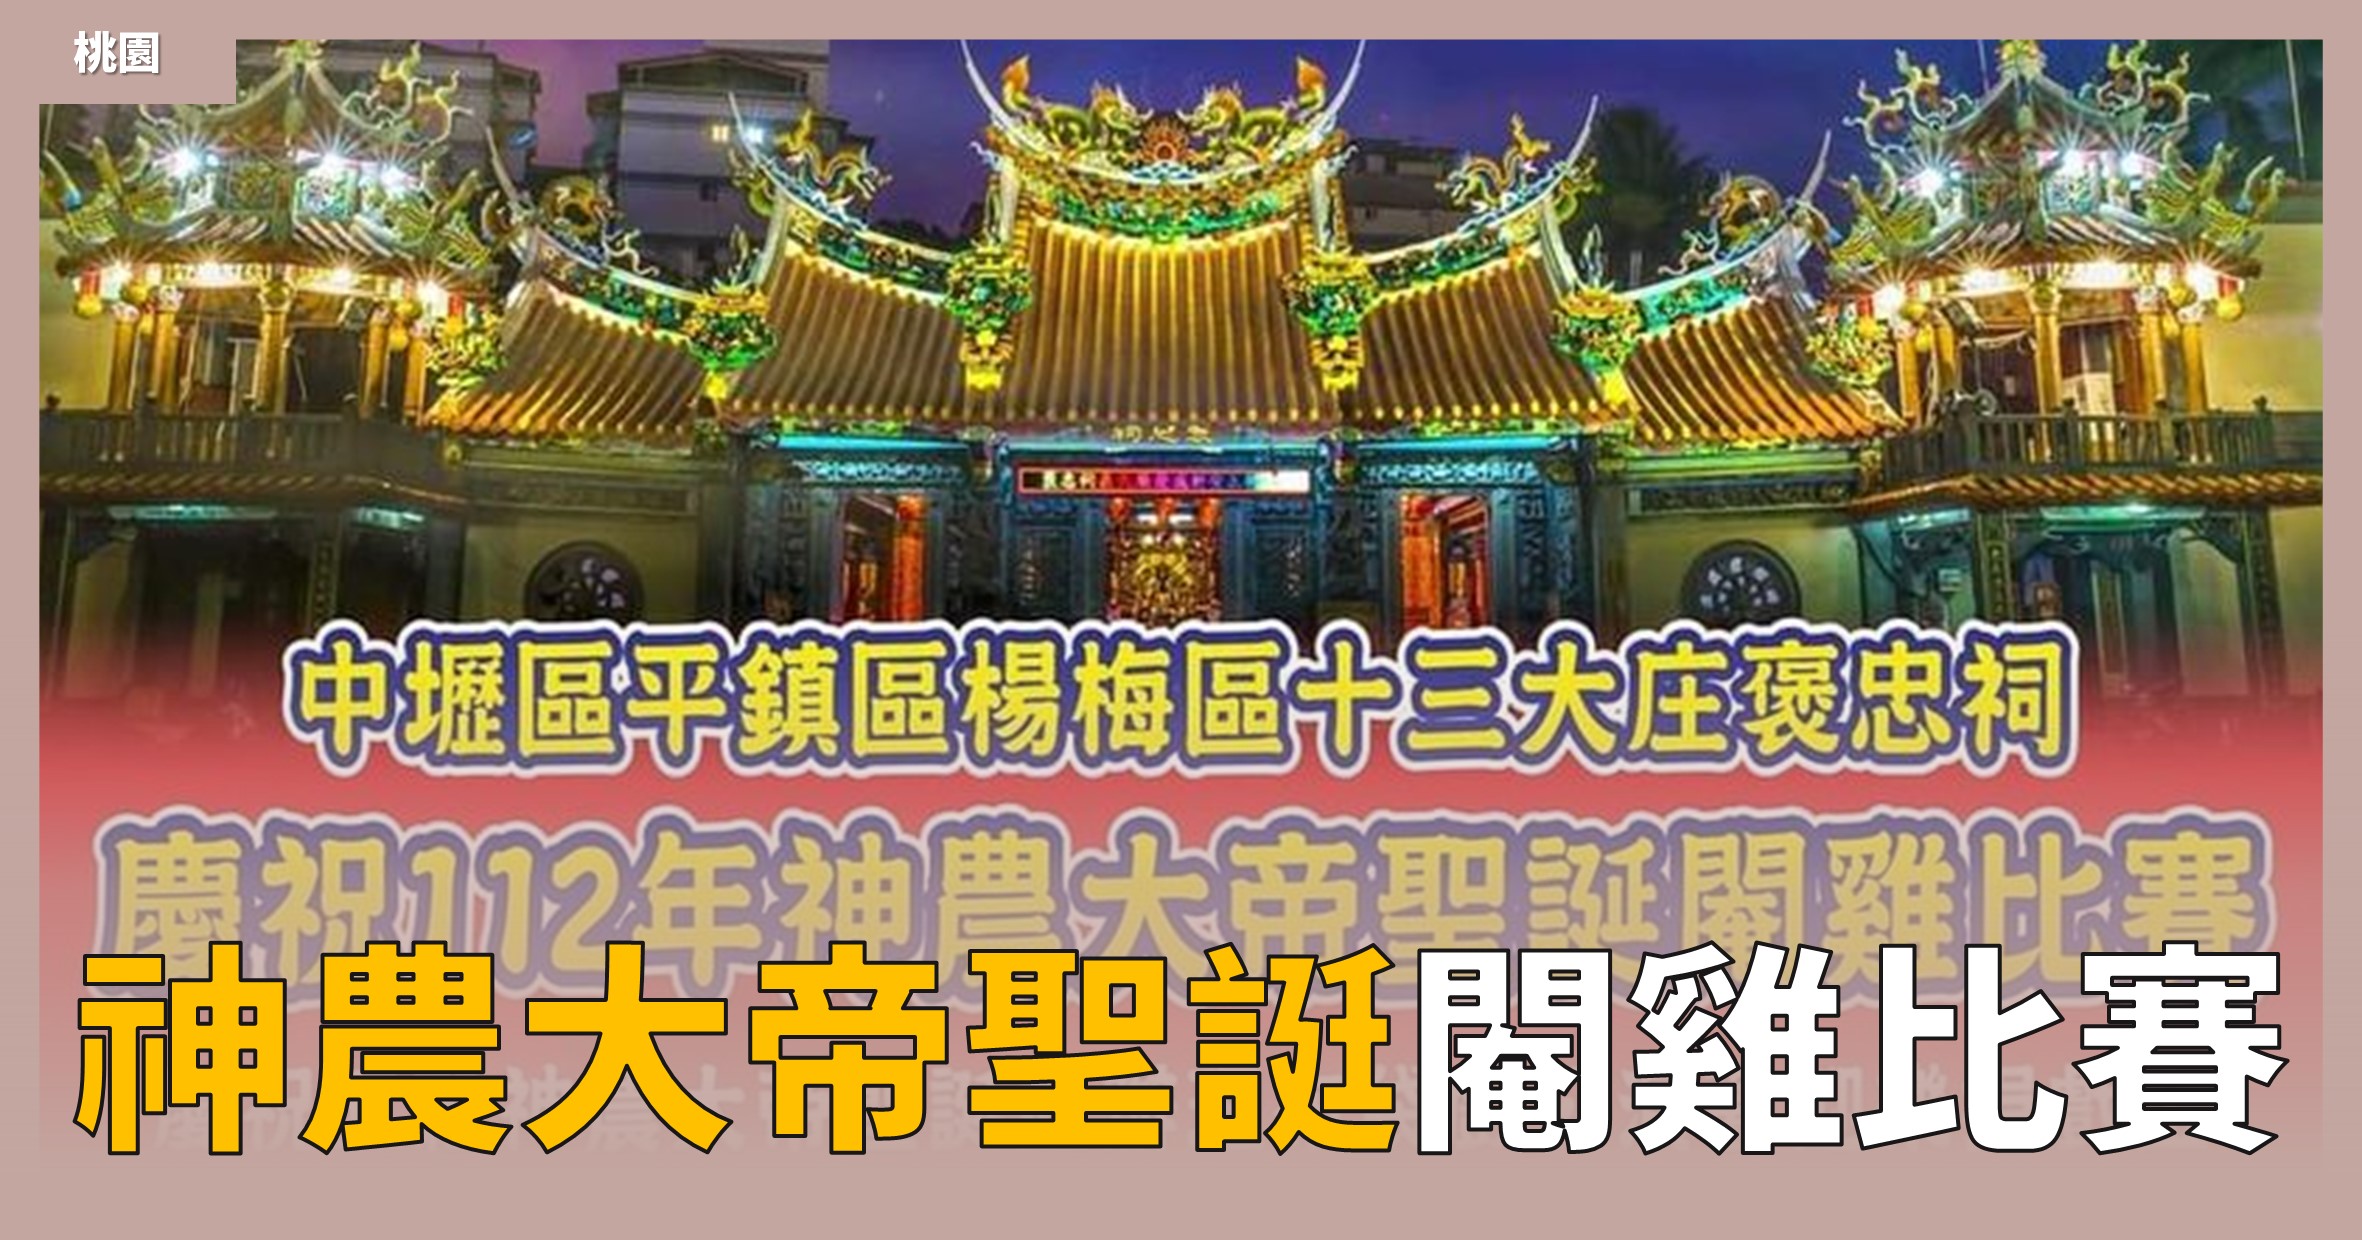 網站近期文章：桃園活動》慶祝112年神農大帝聖誔閹雞比賽